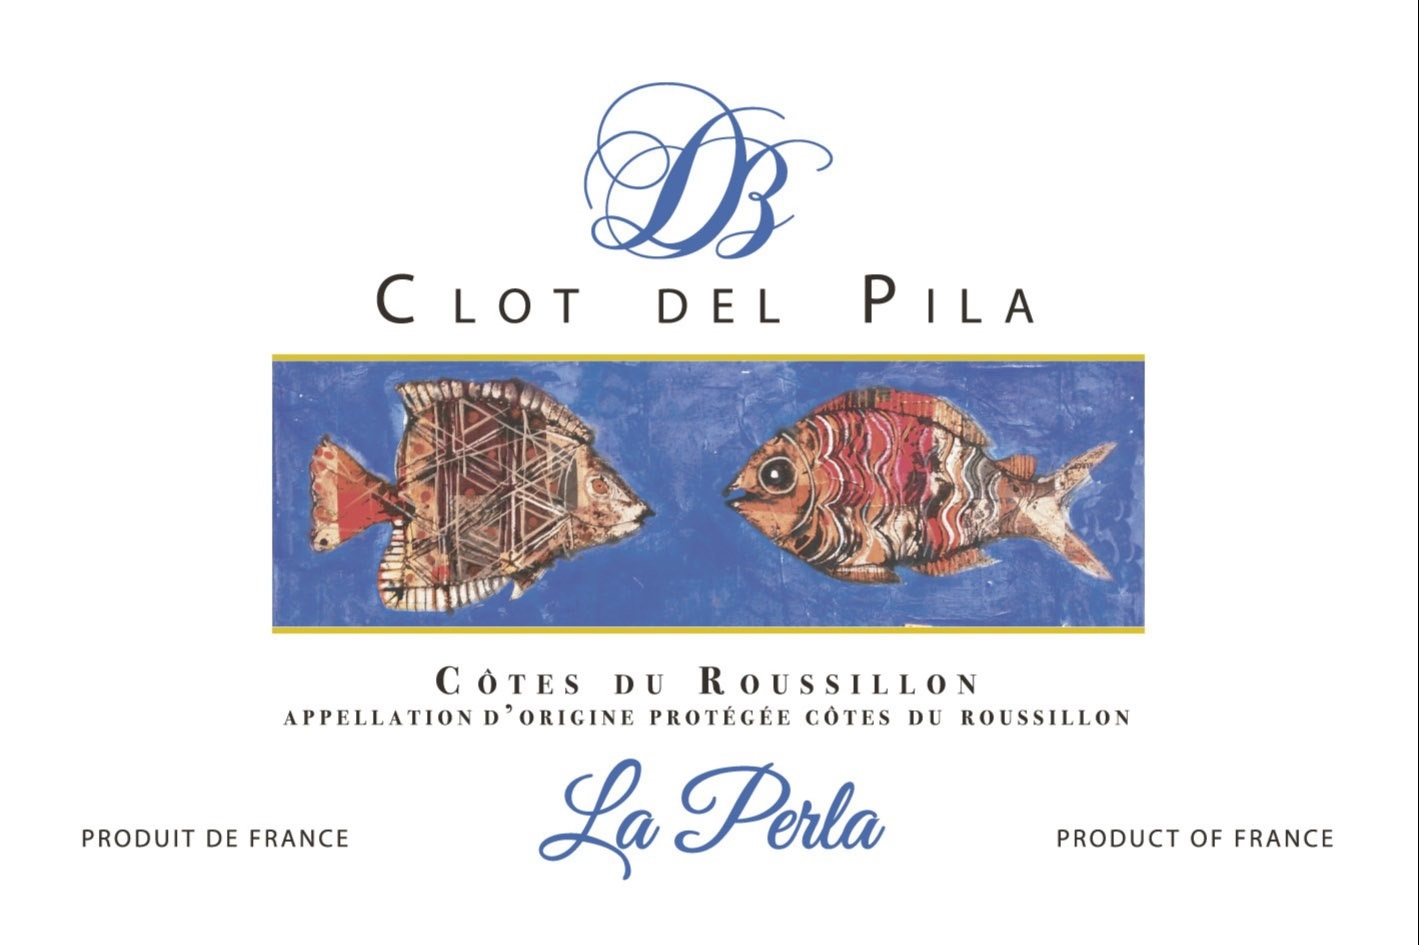 Clot del Pila - La Perla Cote du Roussillon red label